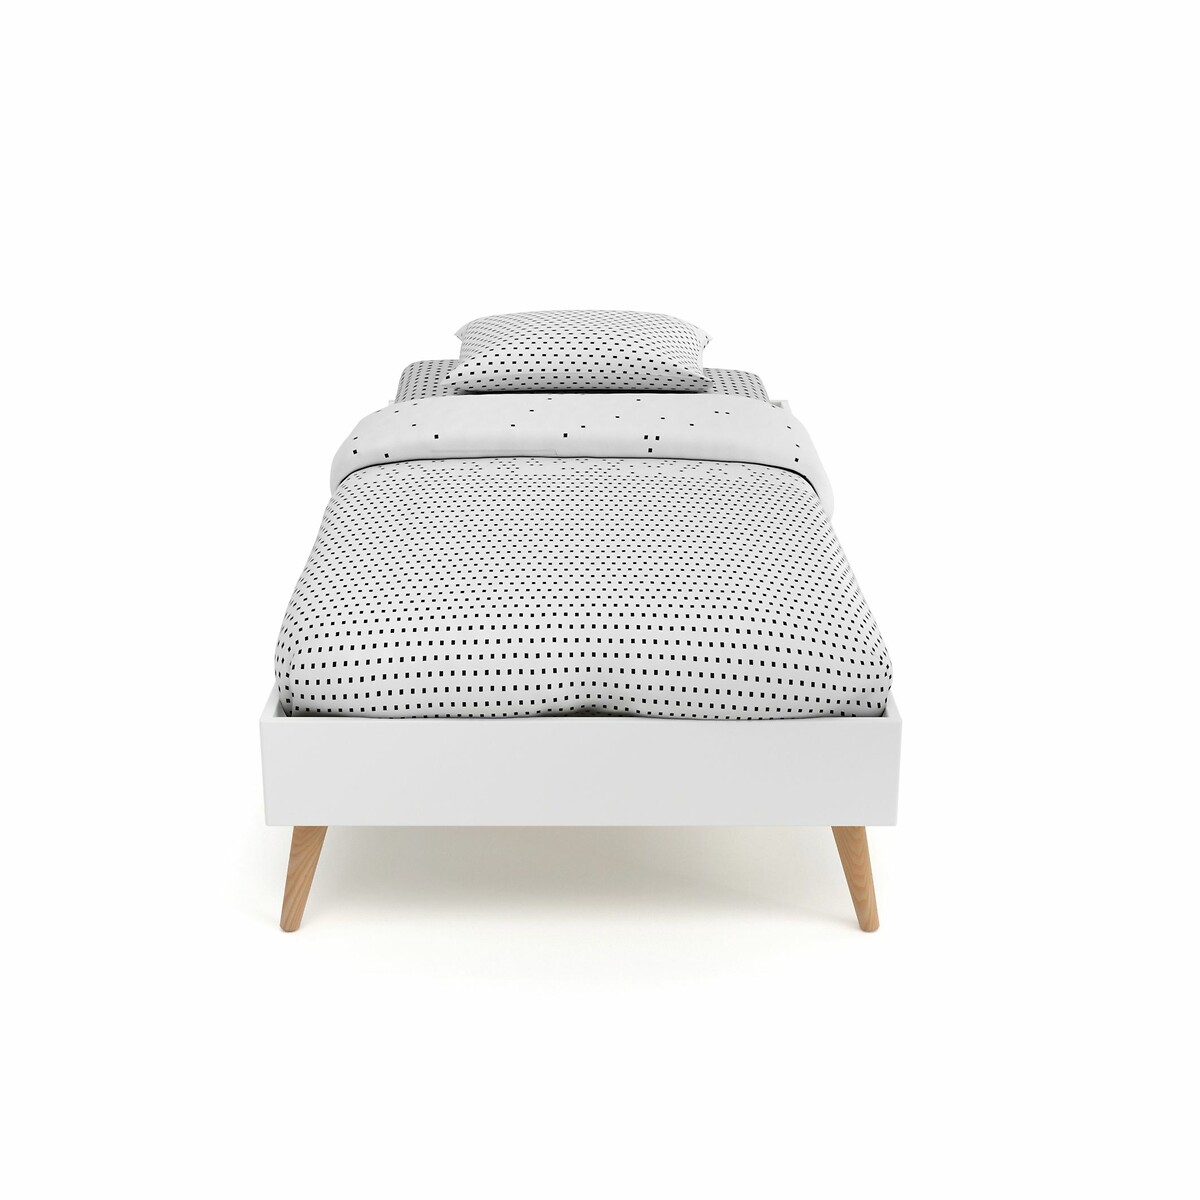 Кровать La Redoute С реечным дном JIMI 90 x 190 см белый, размер 90 x 190 см - фото 2